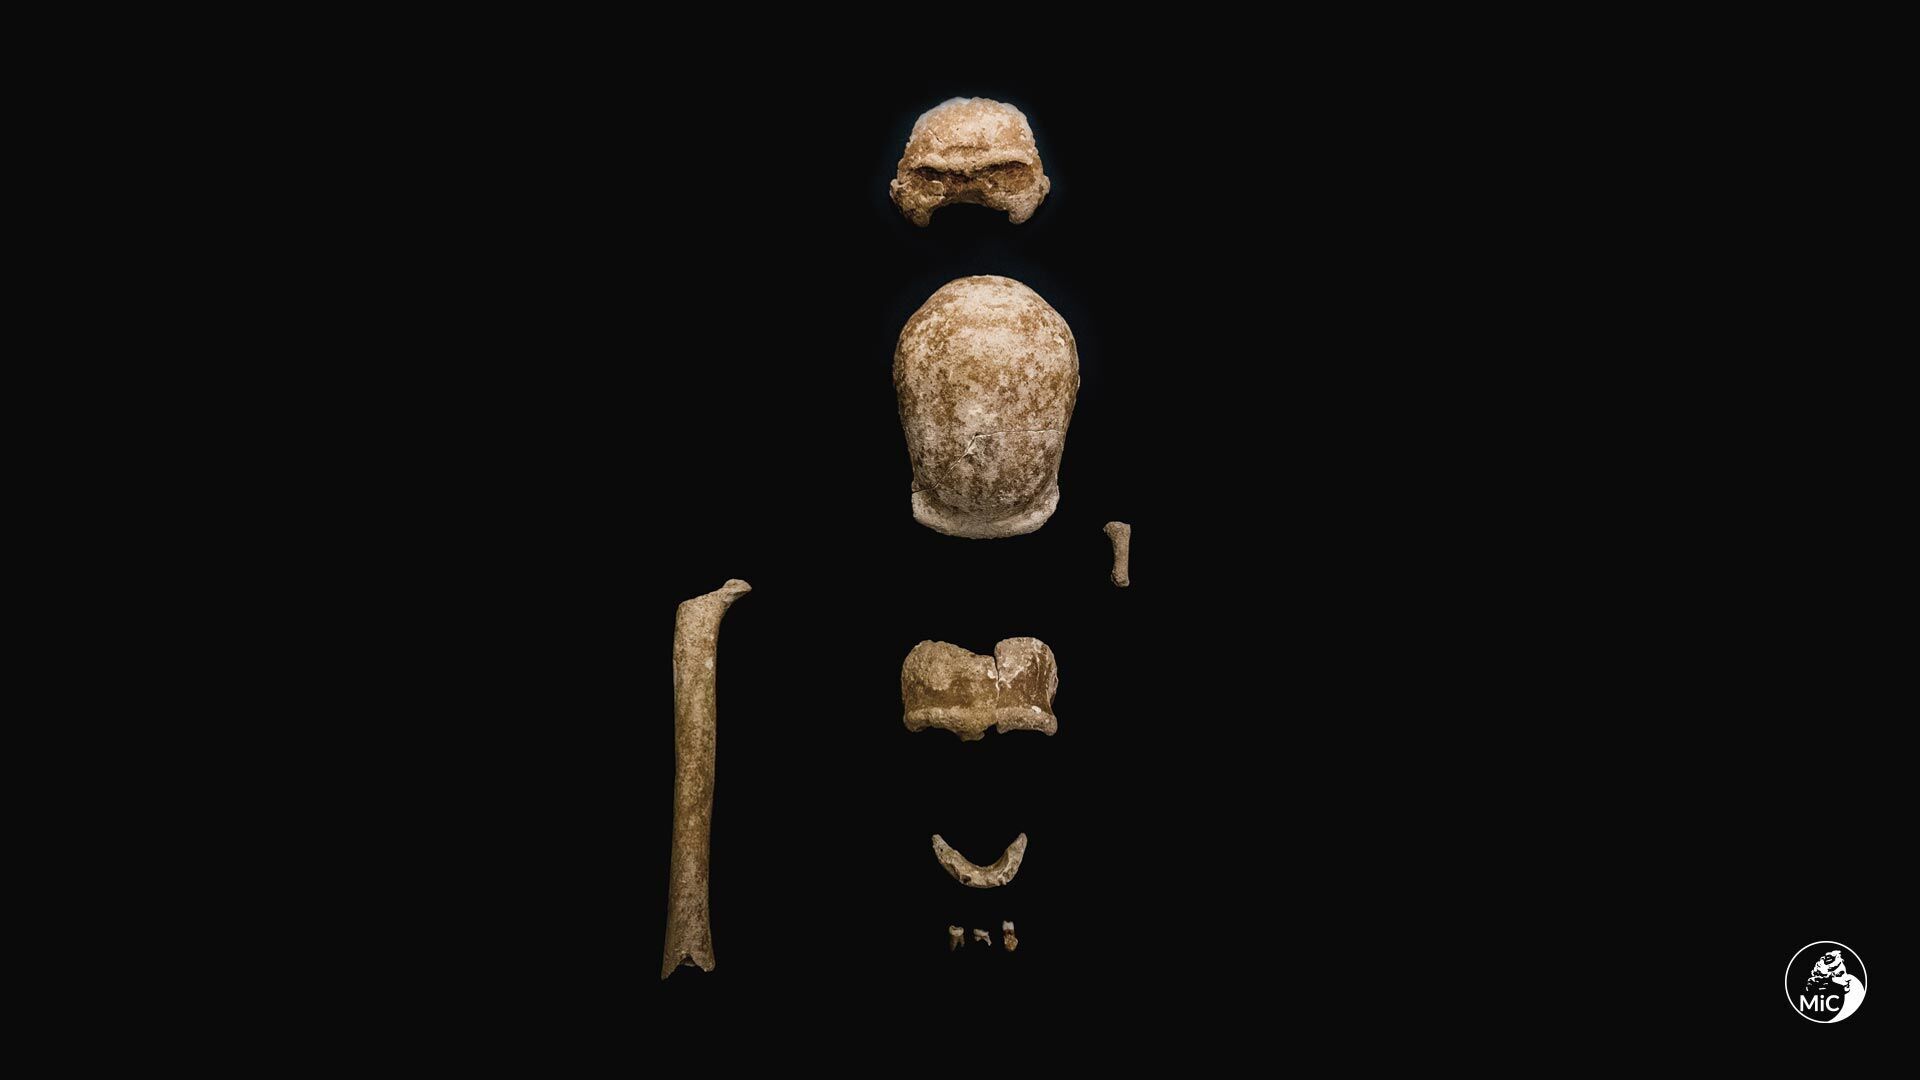 Близ Рима в пещере нашли останки 9 неандертальцев